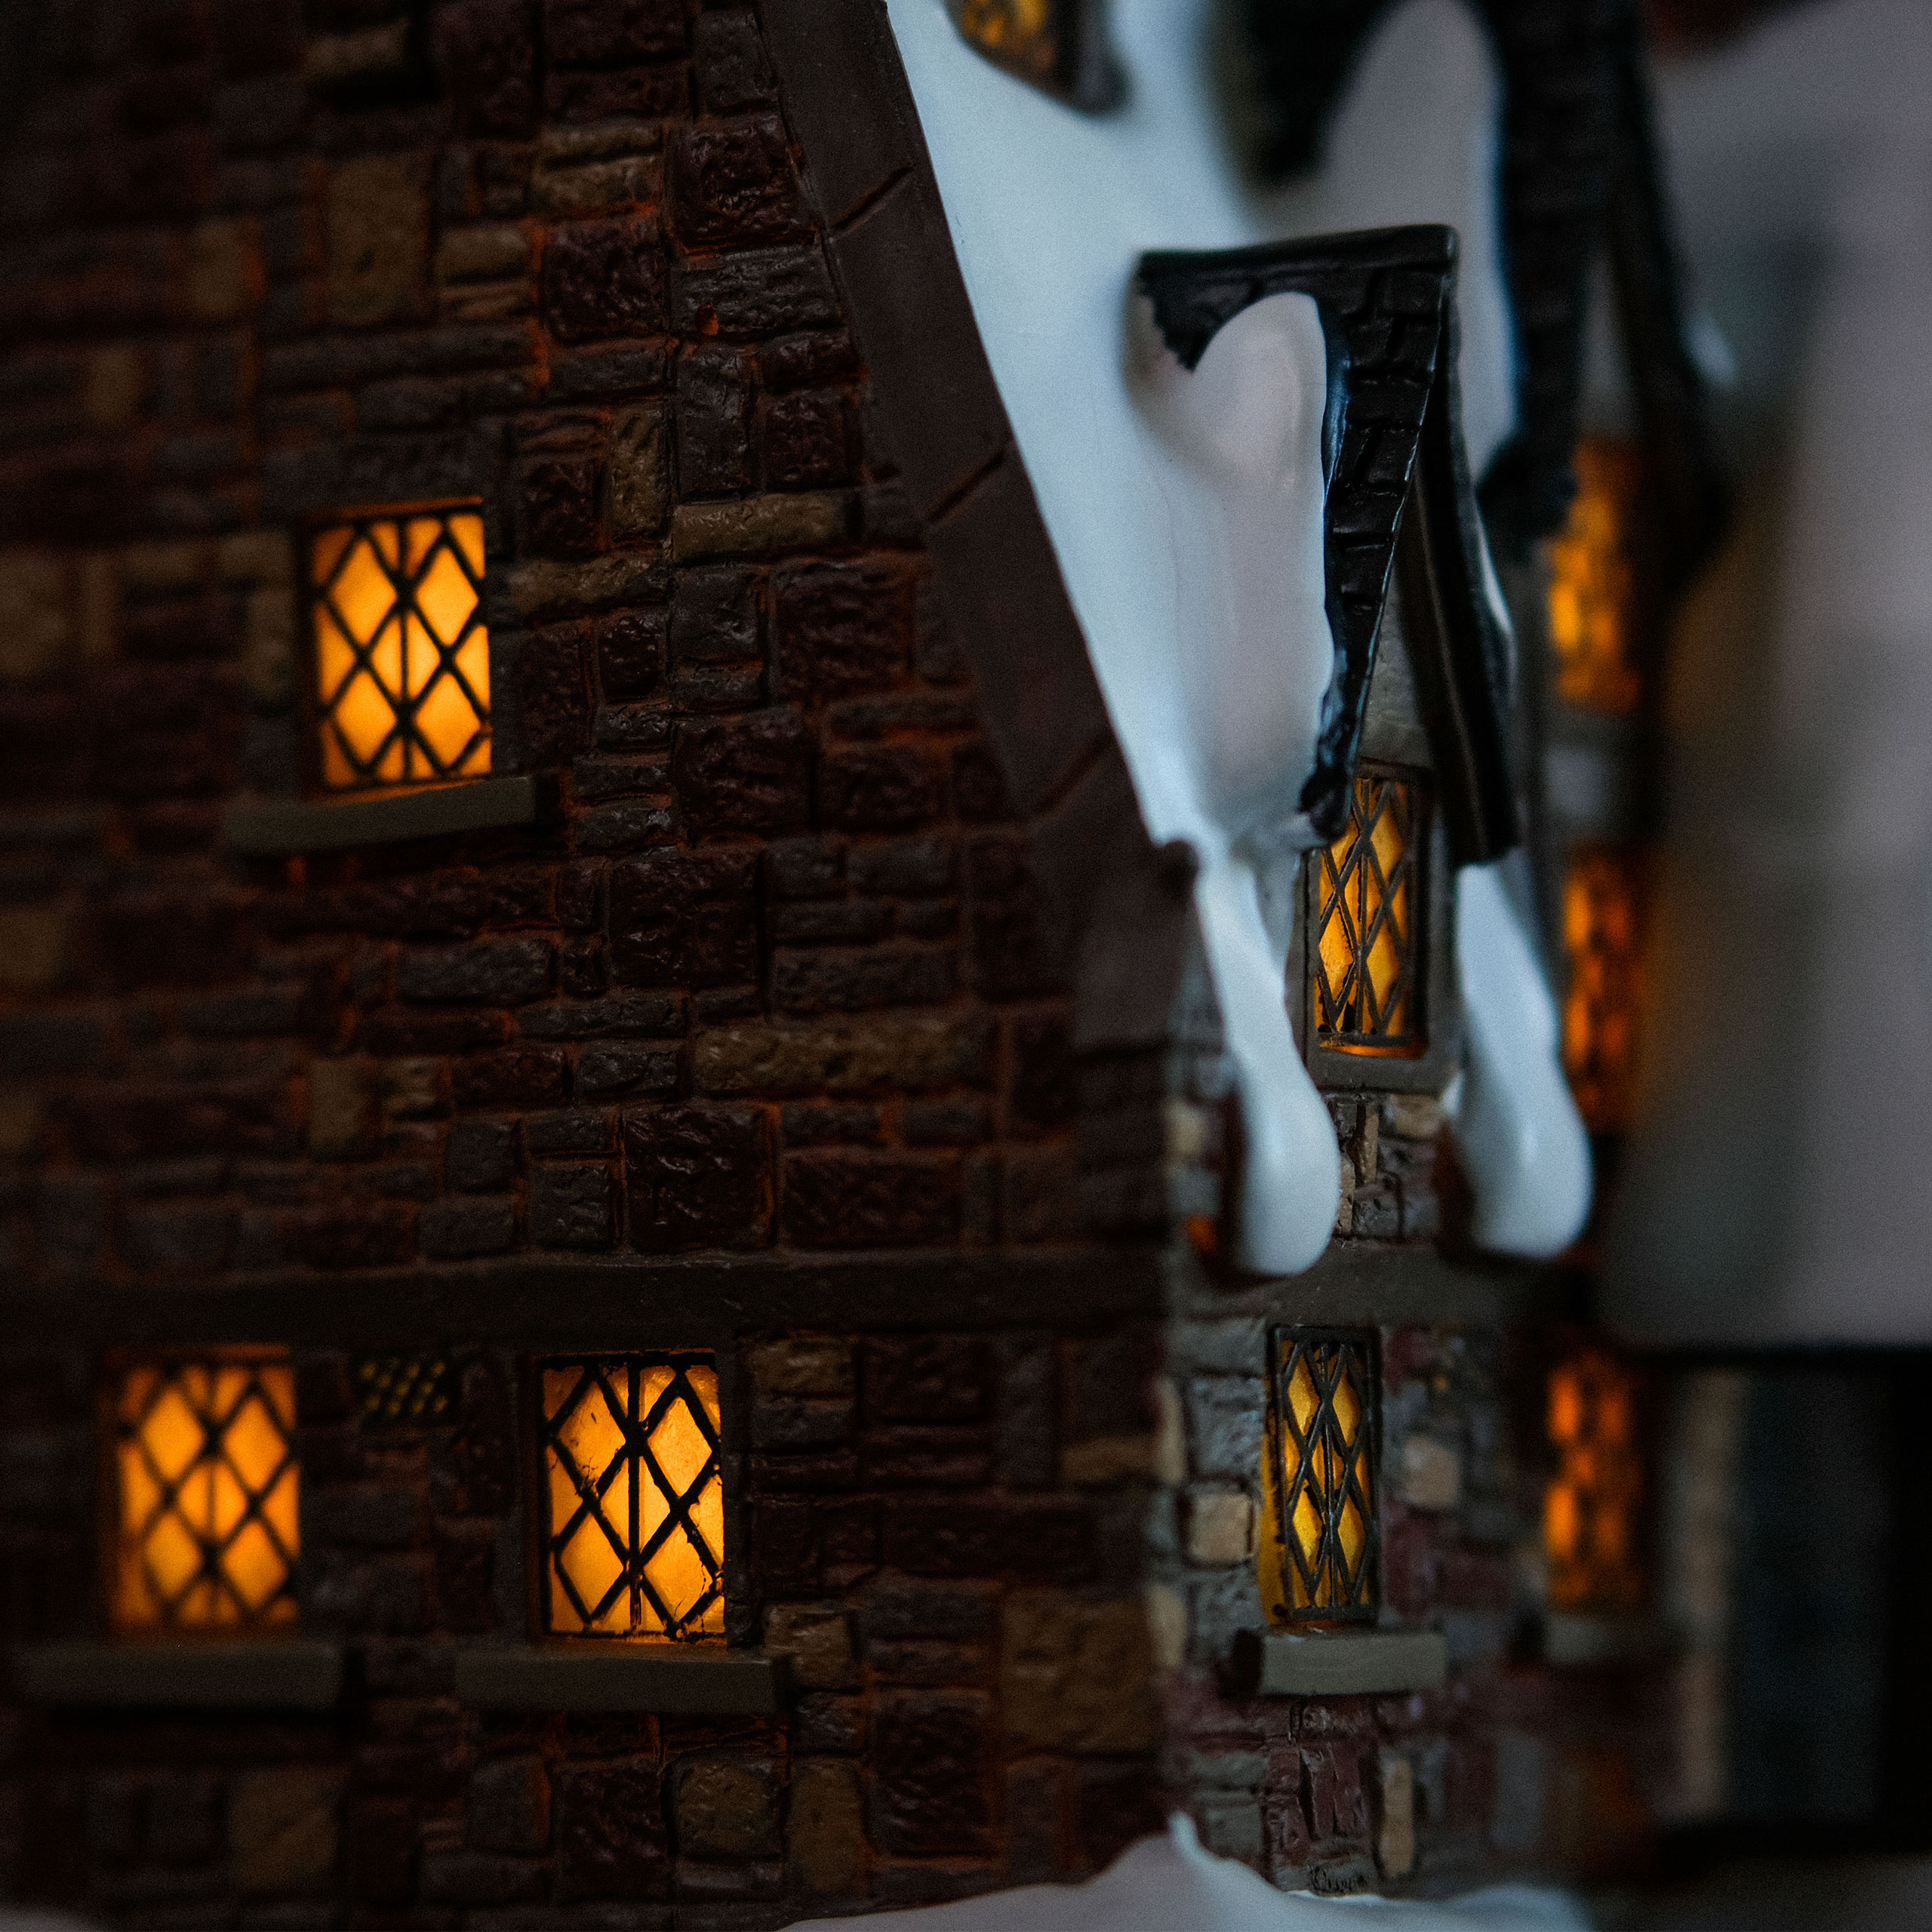 Drie Bezems Miniatuur Replica met Verlichting - Harry Potter